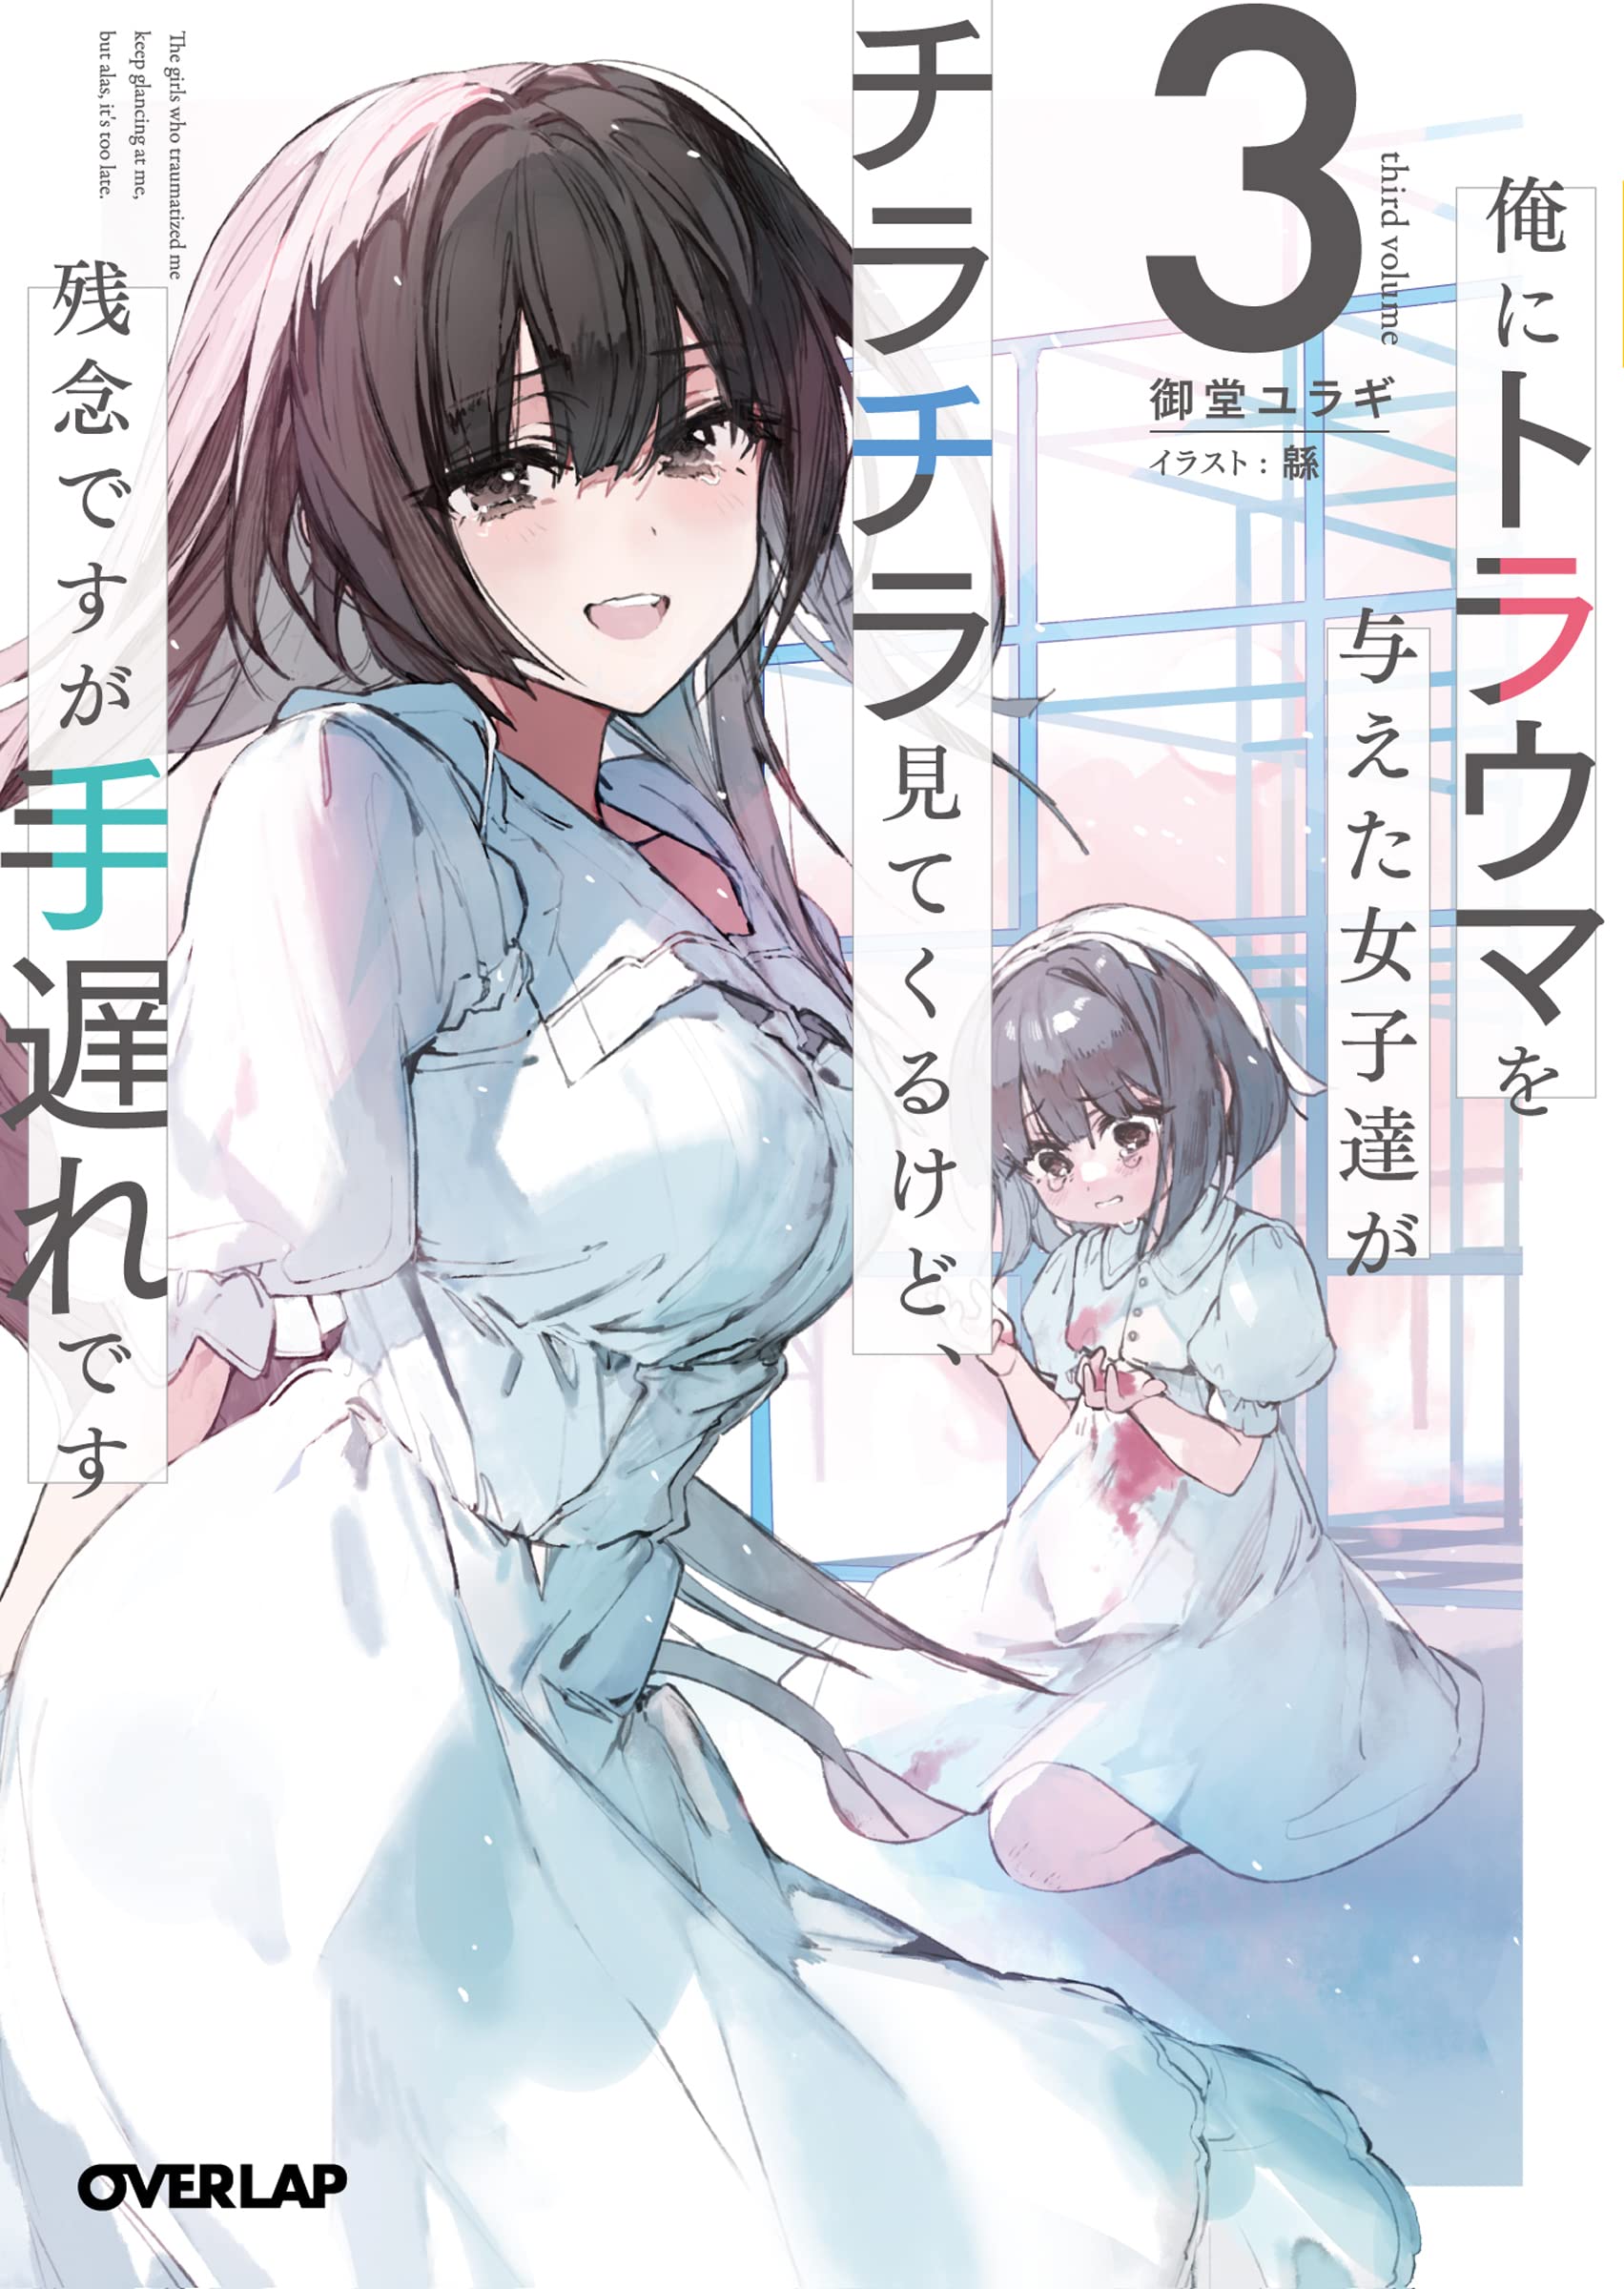 Maou to Yuusha no Tatakai no Ura de (Light Novel) Manga